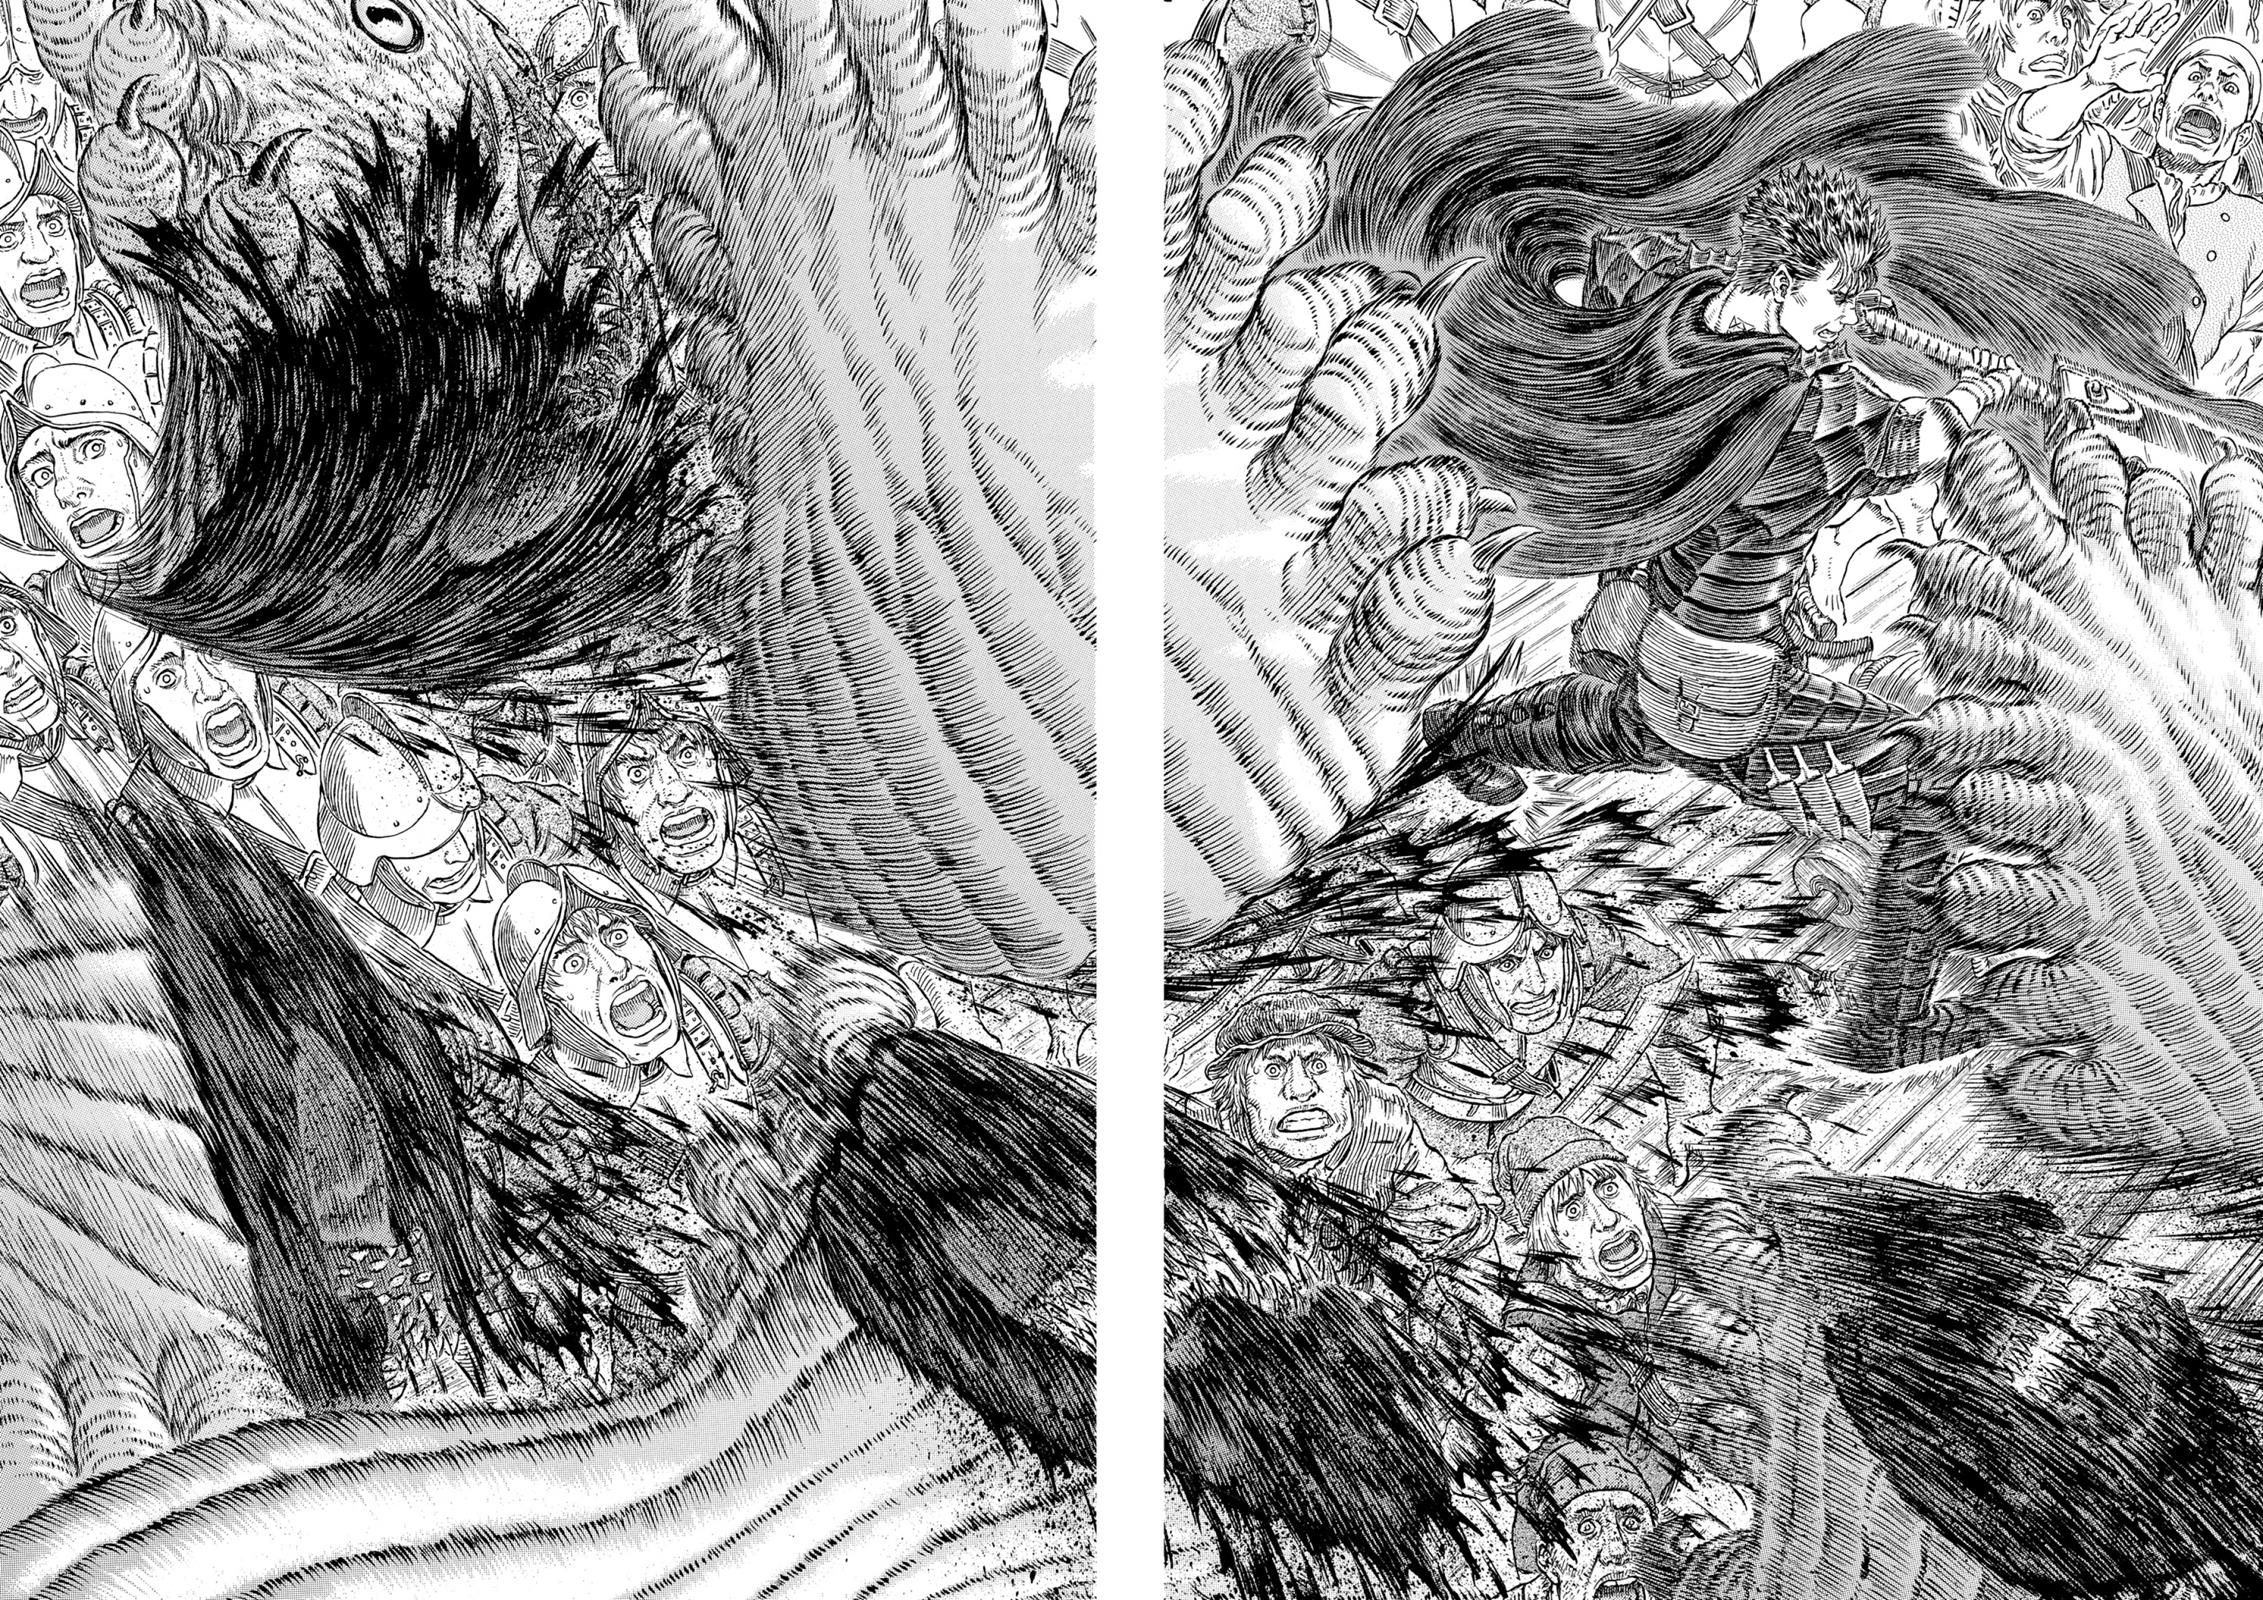 Berserk Manga Chapter 310 image 04